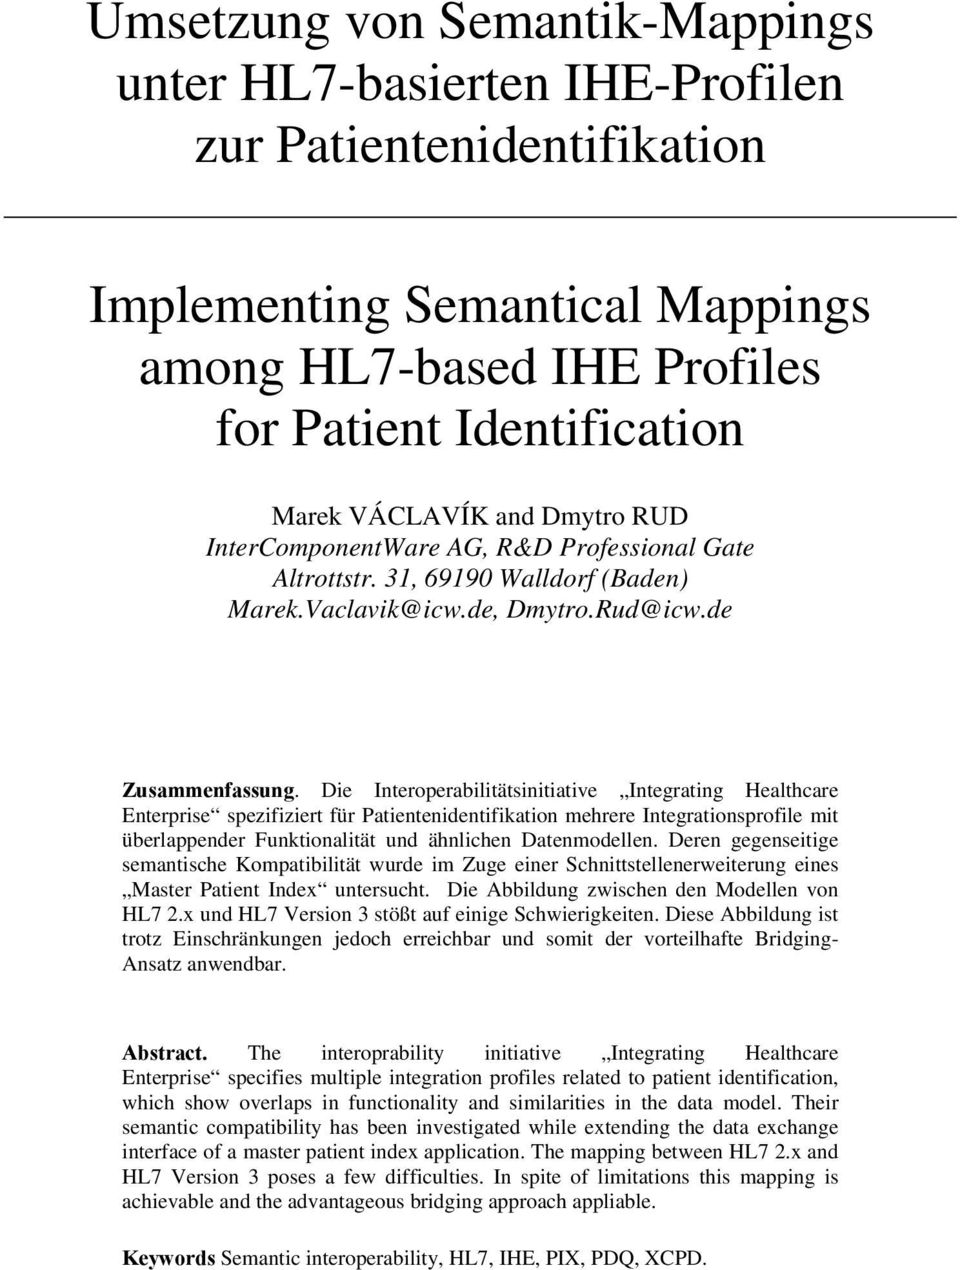 Die Interoperabilitätsinitiative Integrating Healthcare Enterprise spezifiziert für Patientenidentifikation mehrere Integrationsprofile mit überlappender Funktionalität und ähnlichen Datenmodellen.